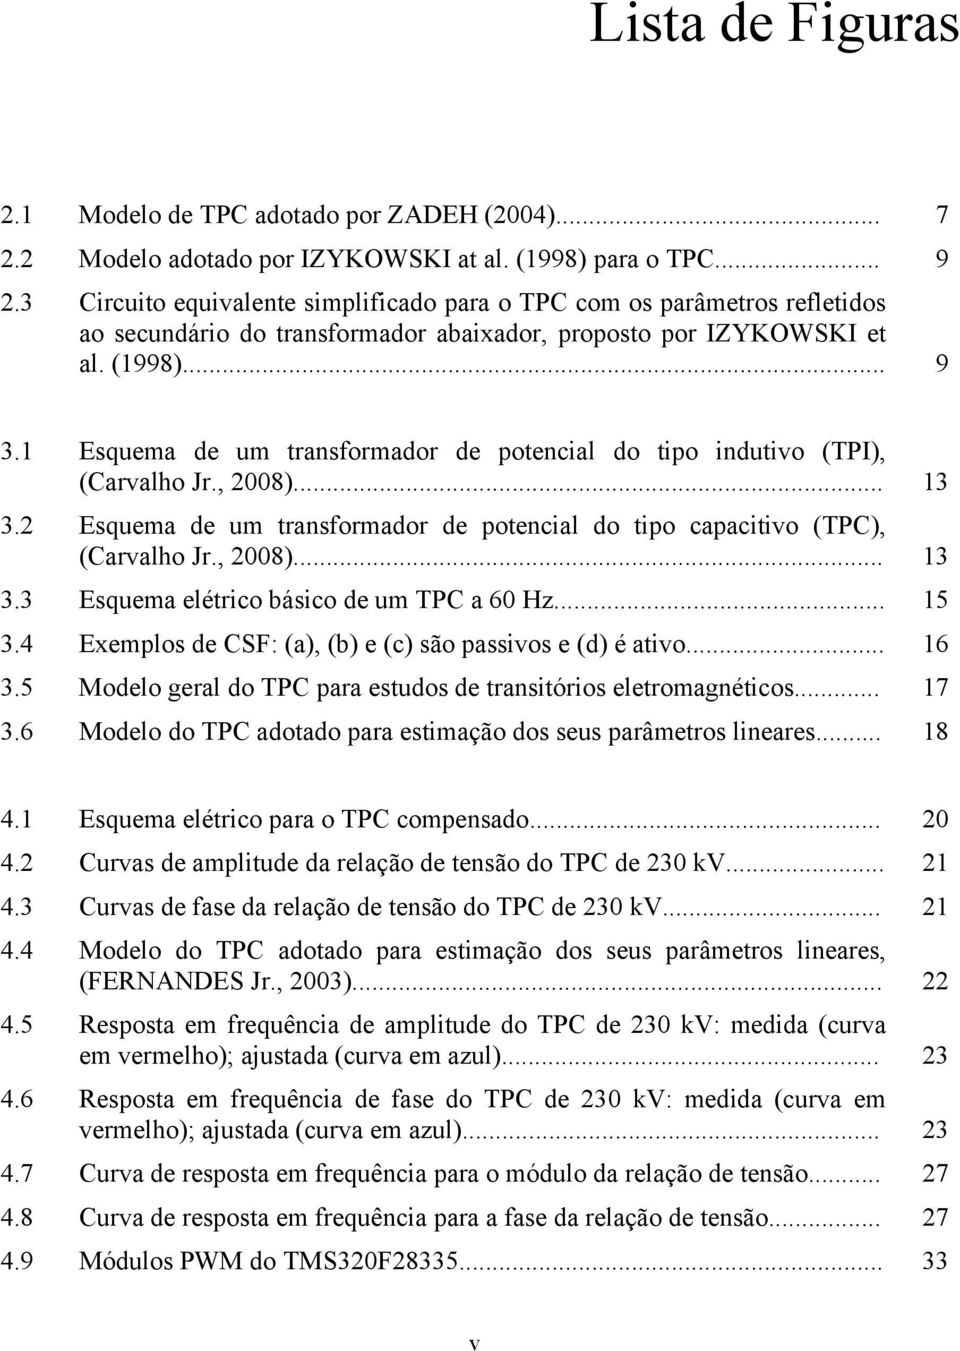 1 Esquema de um transformador de potencial do tipo indutivo (TPI), (Carvalho Jr., 2008)... 13 3.2 Esquema de um transformador de potencial do tipo capacitivo (TPC), (Carvalho Jr., 2008)... 13 3.3 Esquema elétrico básico de um TPC a 60 Hz.